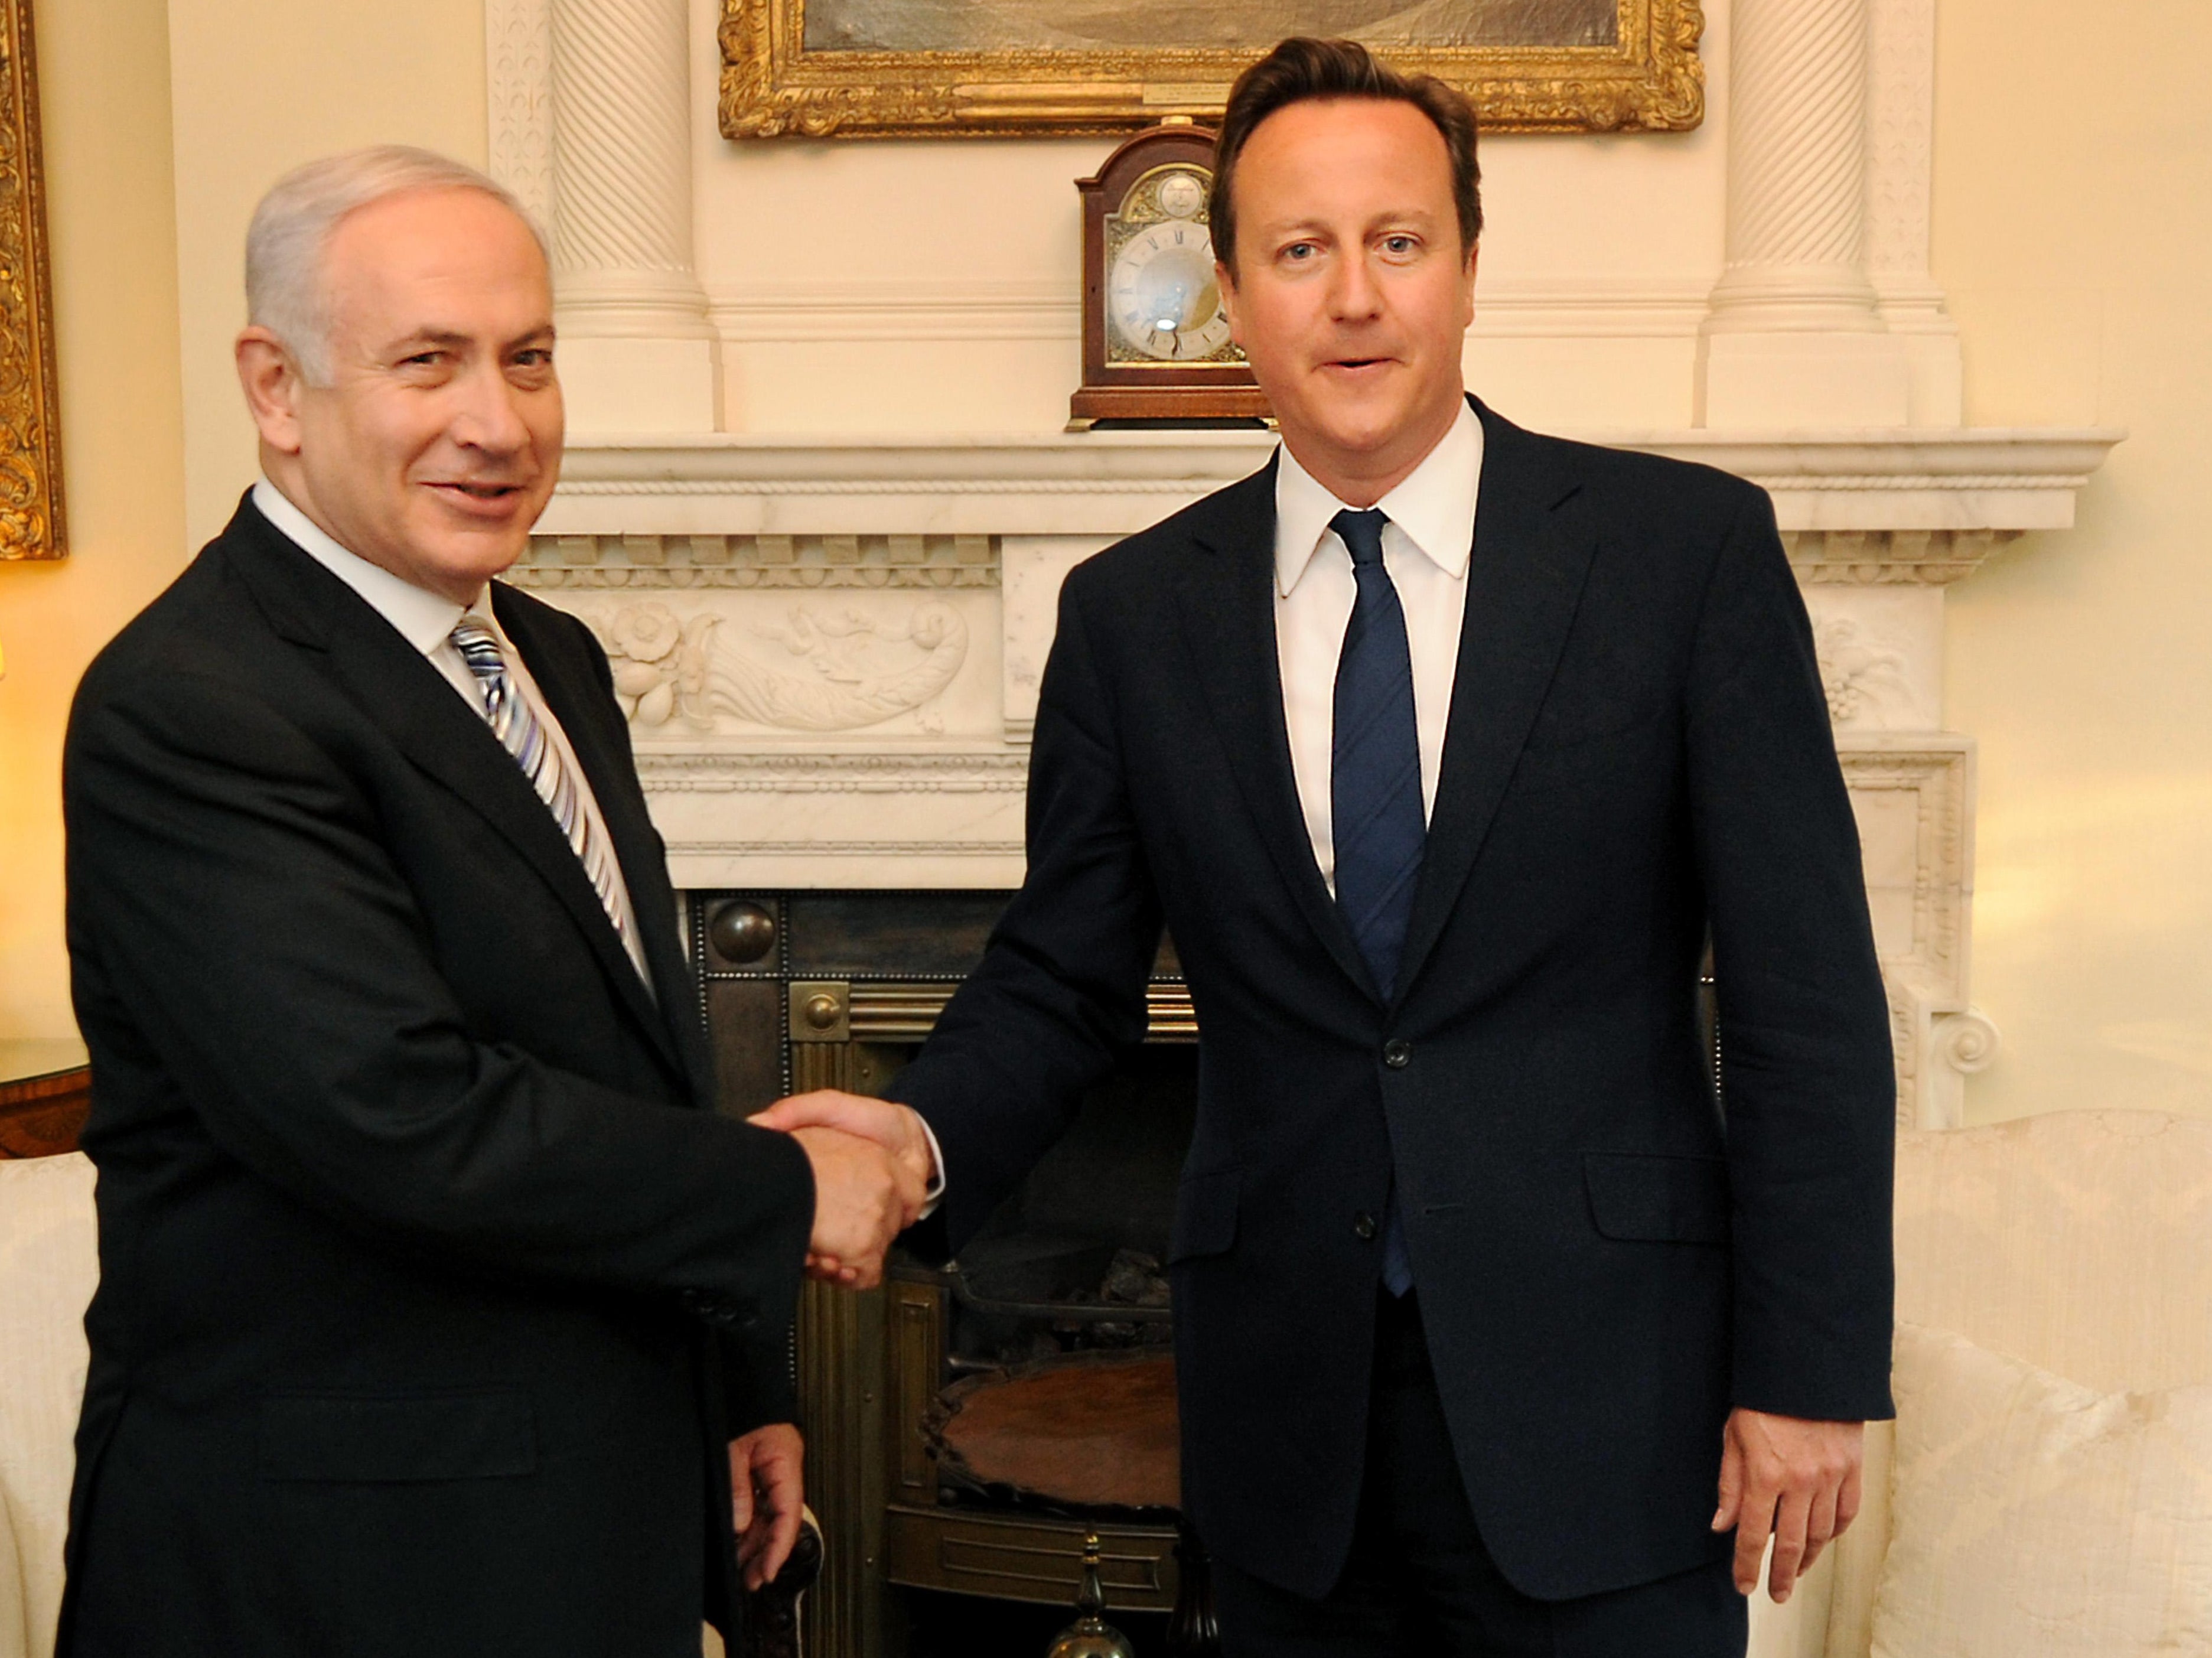 David Cameron (right) meets Israel’s PM Benjamin Netanyahu at No 10 back in 2011